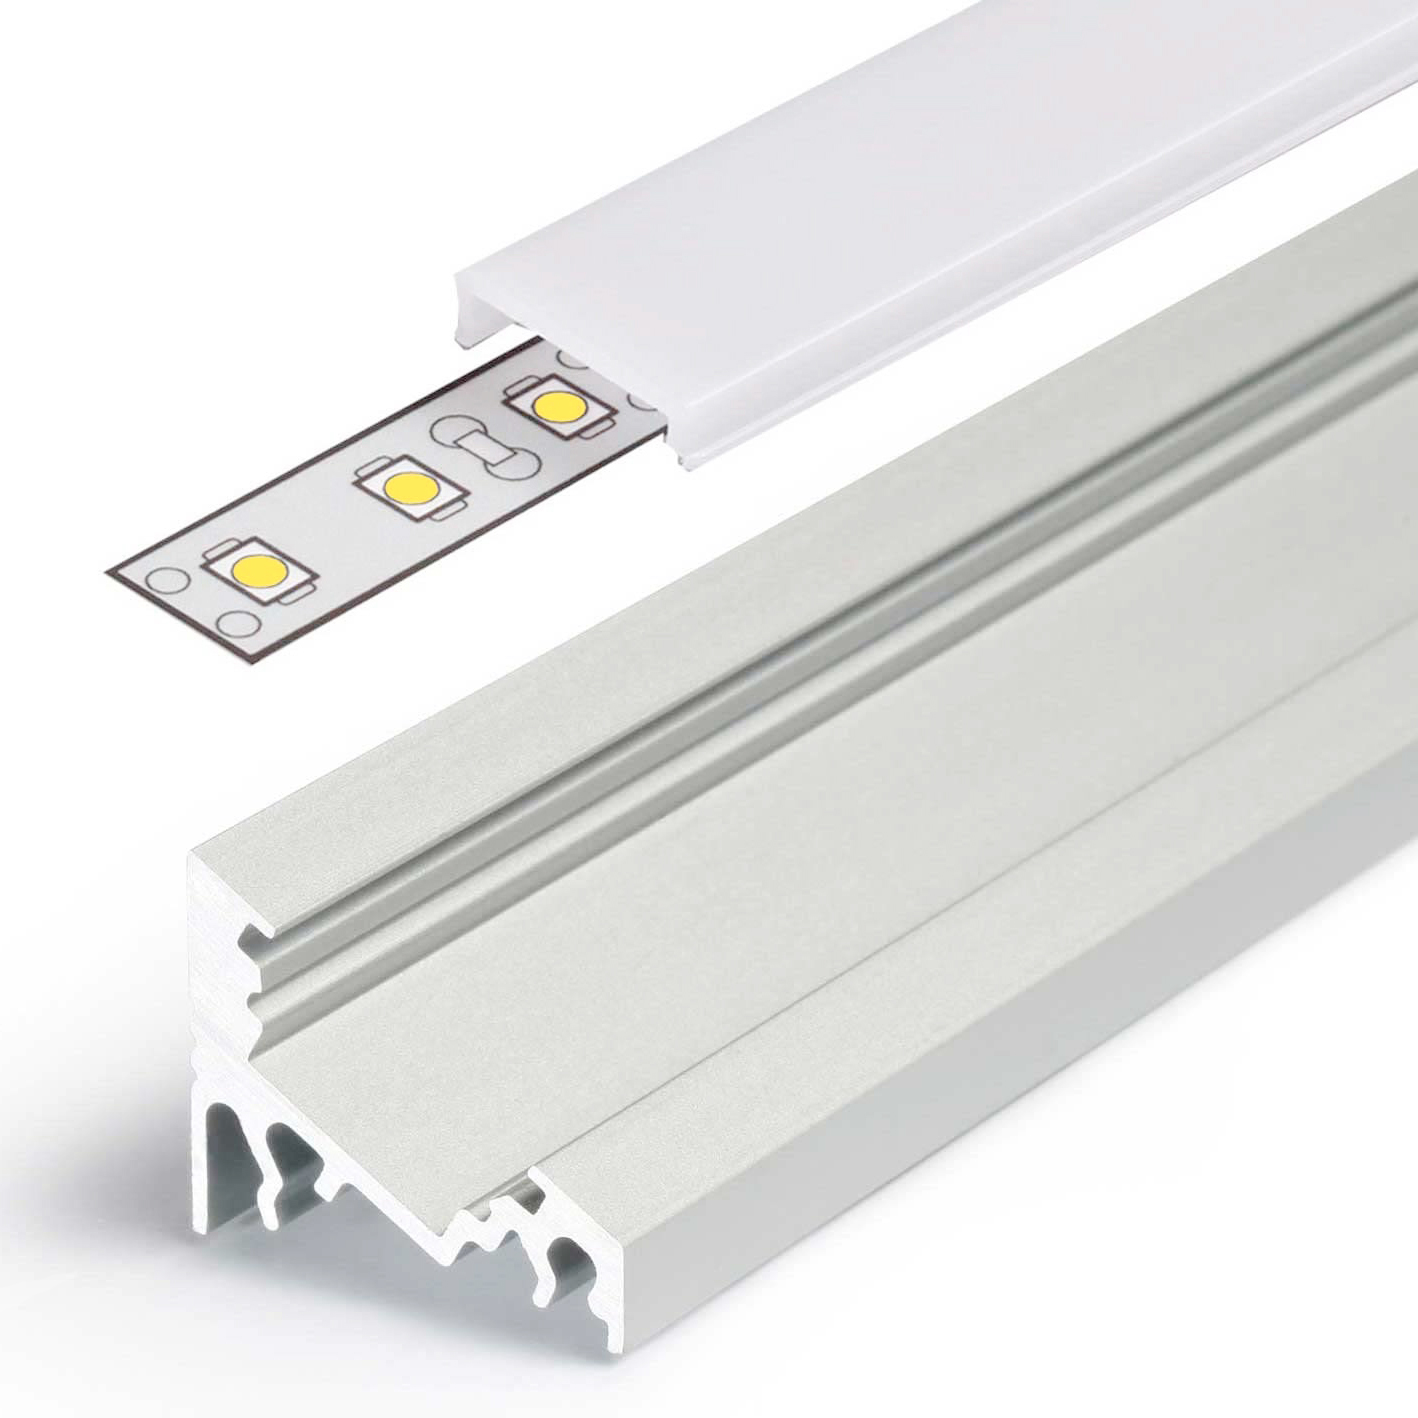 LED Aluminium Eckprofil Set CORNER 10mm (2m) eloxiert inkl. Blende (weiß),  Befestigungsclips und Endkappen für LED-Streifen/indirekte  Beleuchtung-522065